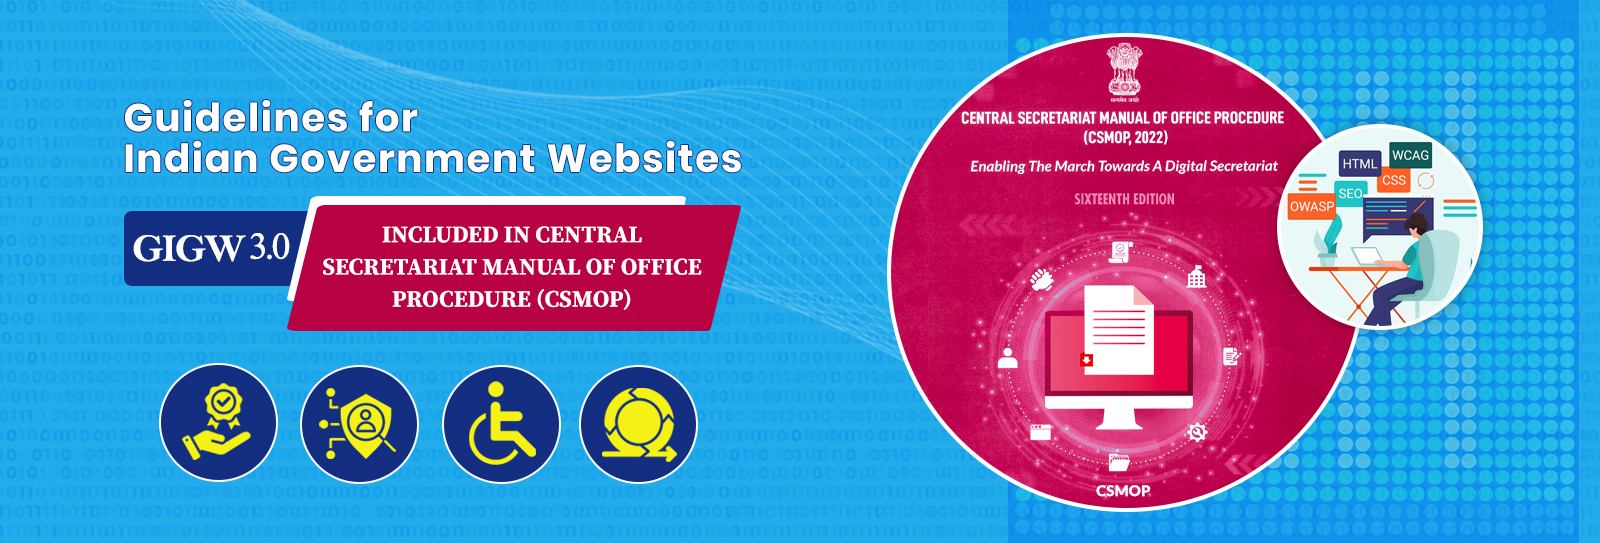 Image of भारत सरकार की वेबसाइटों के लिए दिशानिर्देश